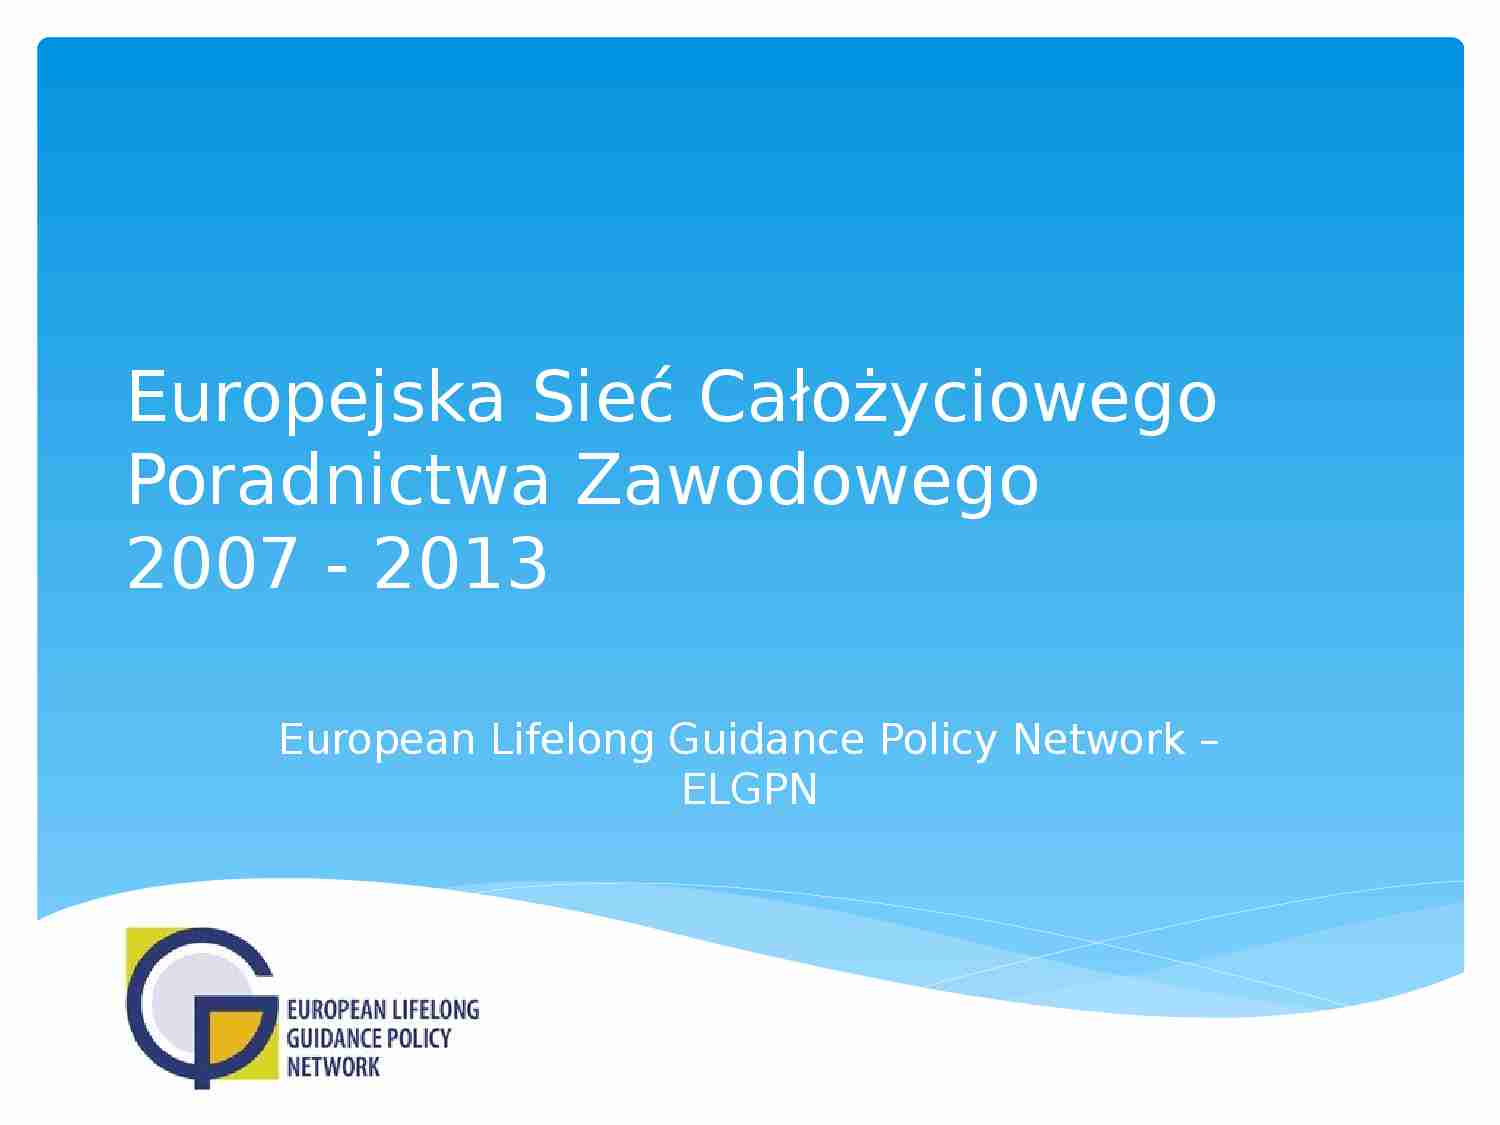 Europejska Sieć Całożyciowego Poradnictwa Zawodowego-prezentacja - strona 1